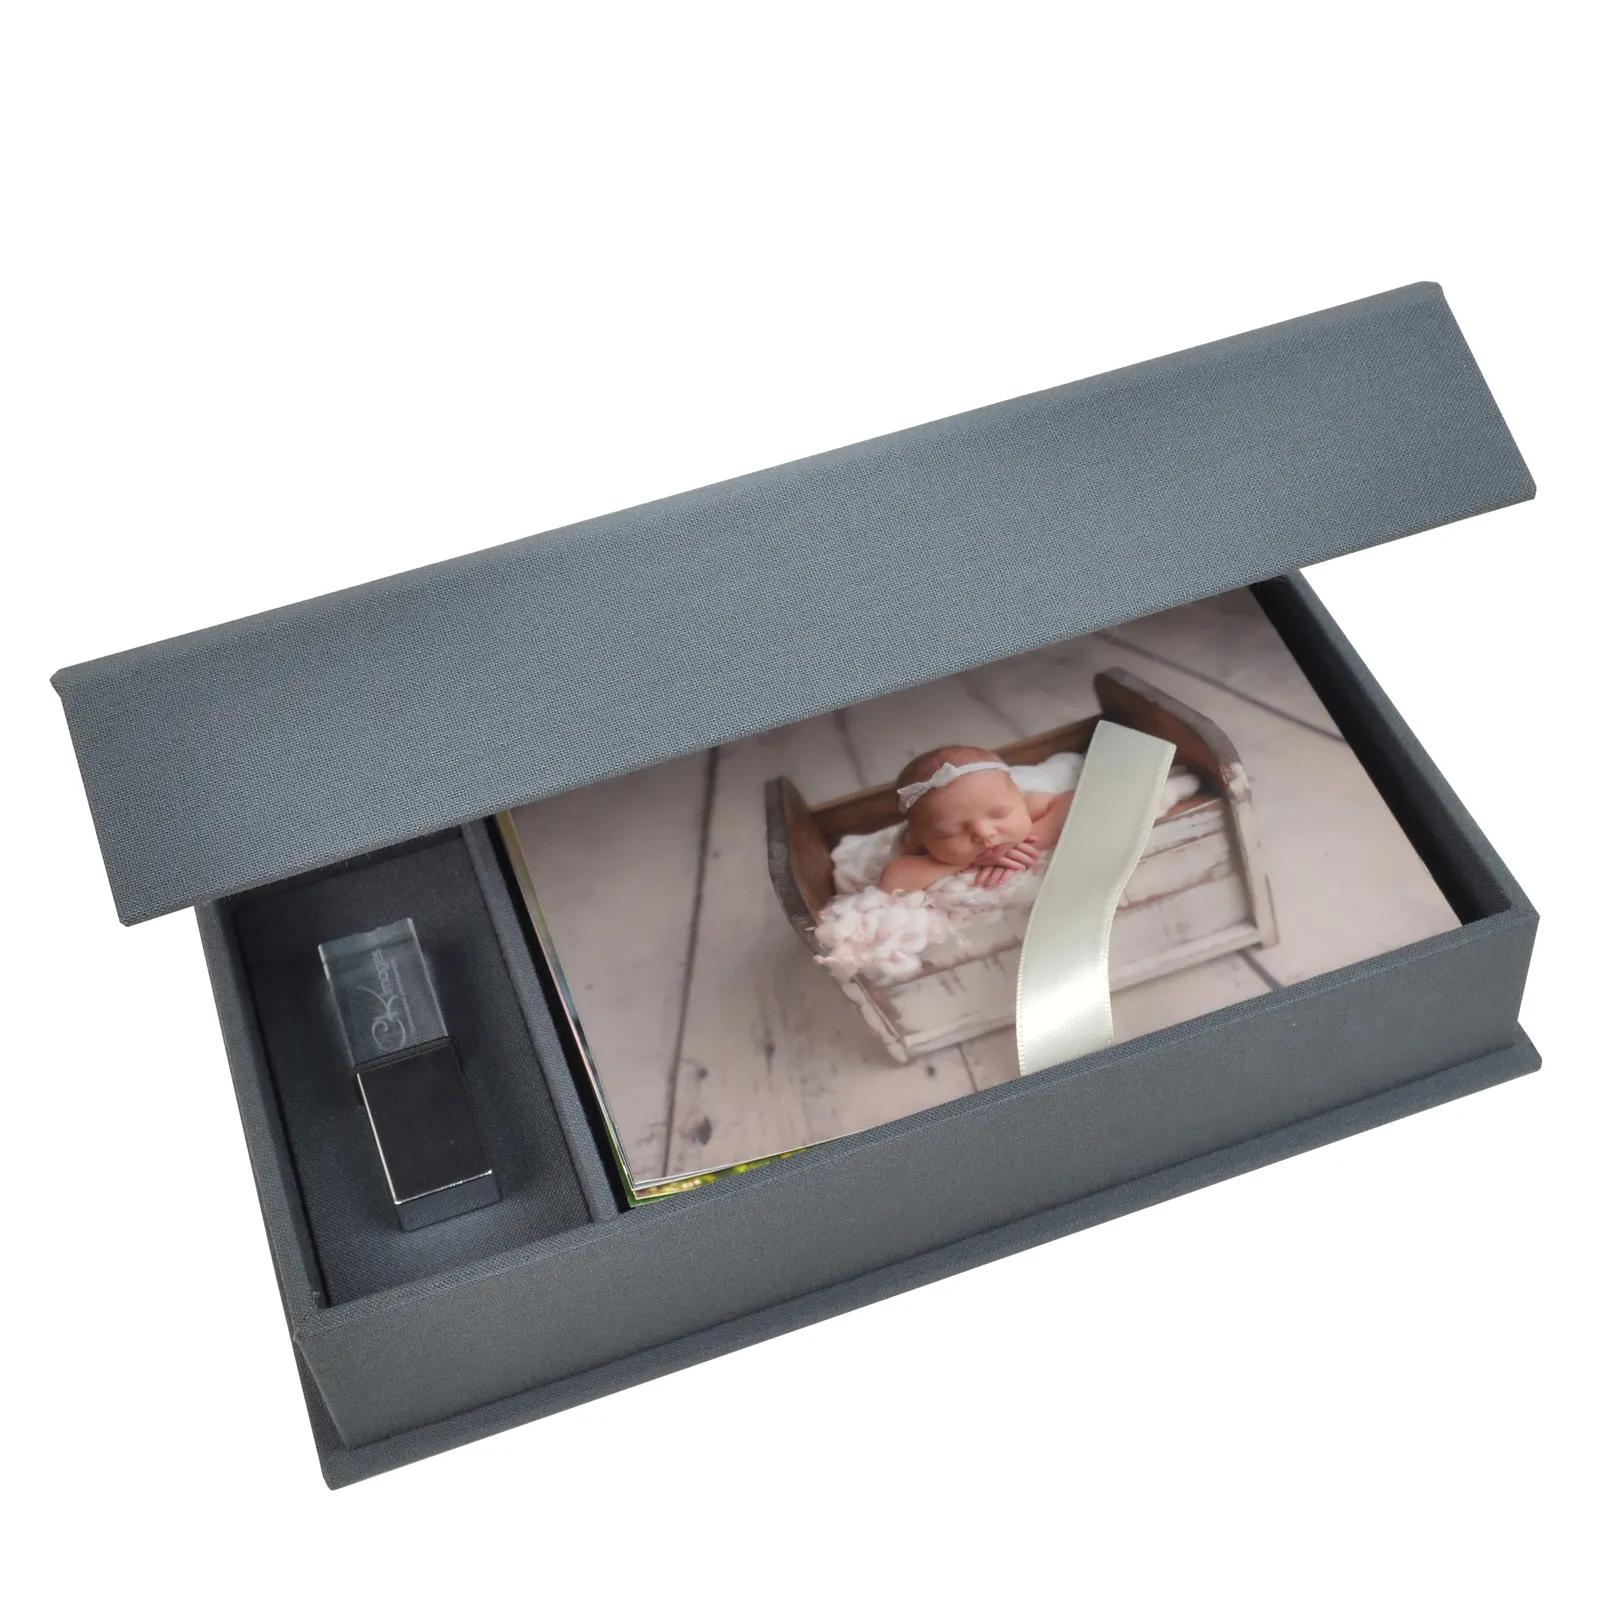 Fotoğraf baskı 4X6 veya 5x7 veya 8x10 fotoğraf kutuları için USB yuvası sunum kutusu ile keten fotoğraf kutusu